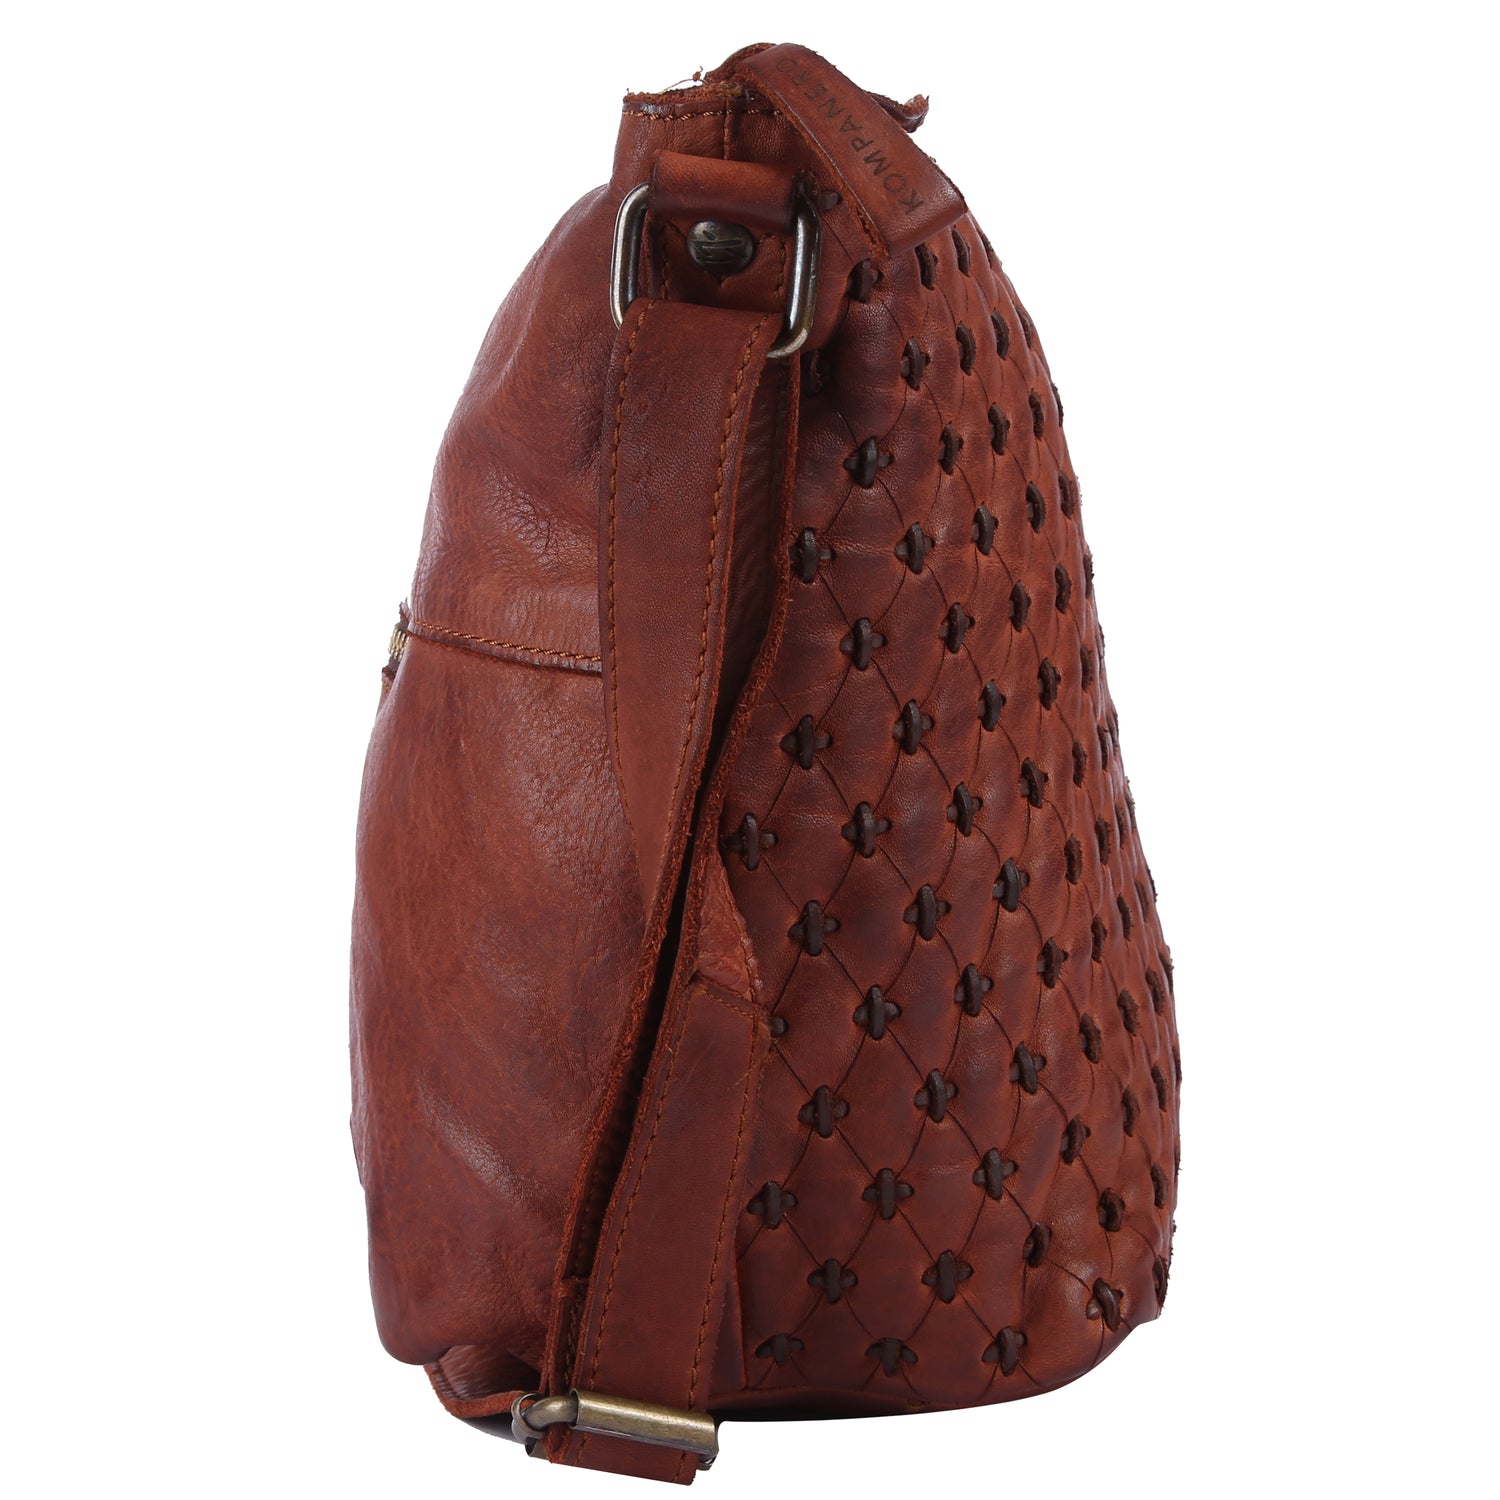 Kompanero Handbags : Buy Kompanero Gardenia - The Handbag Online